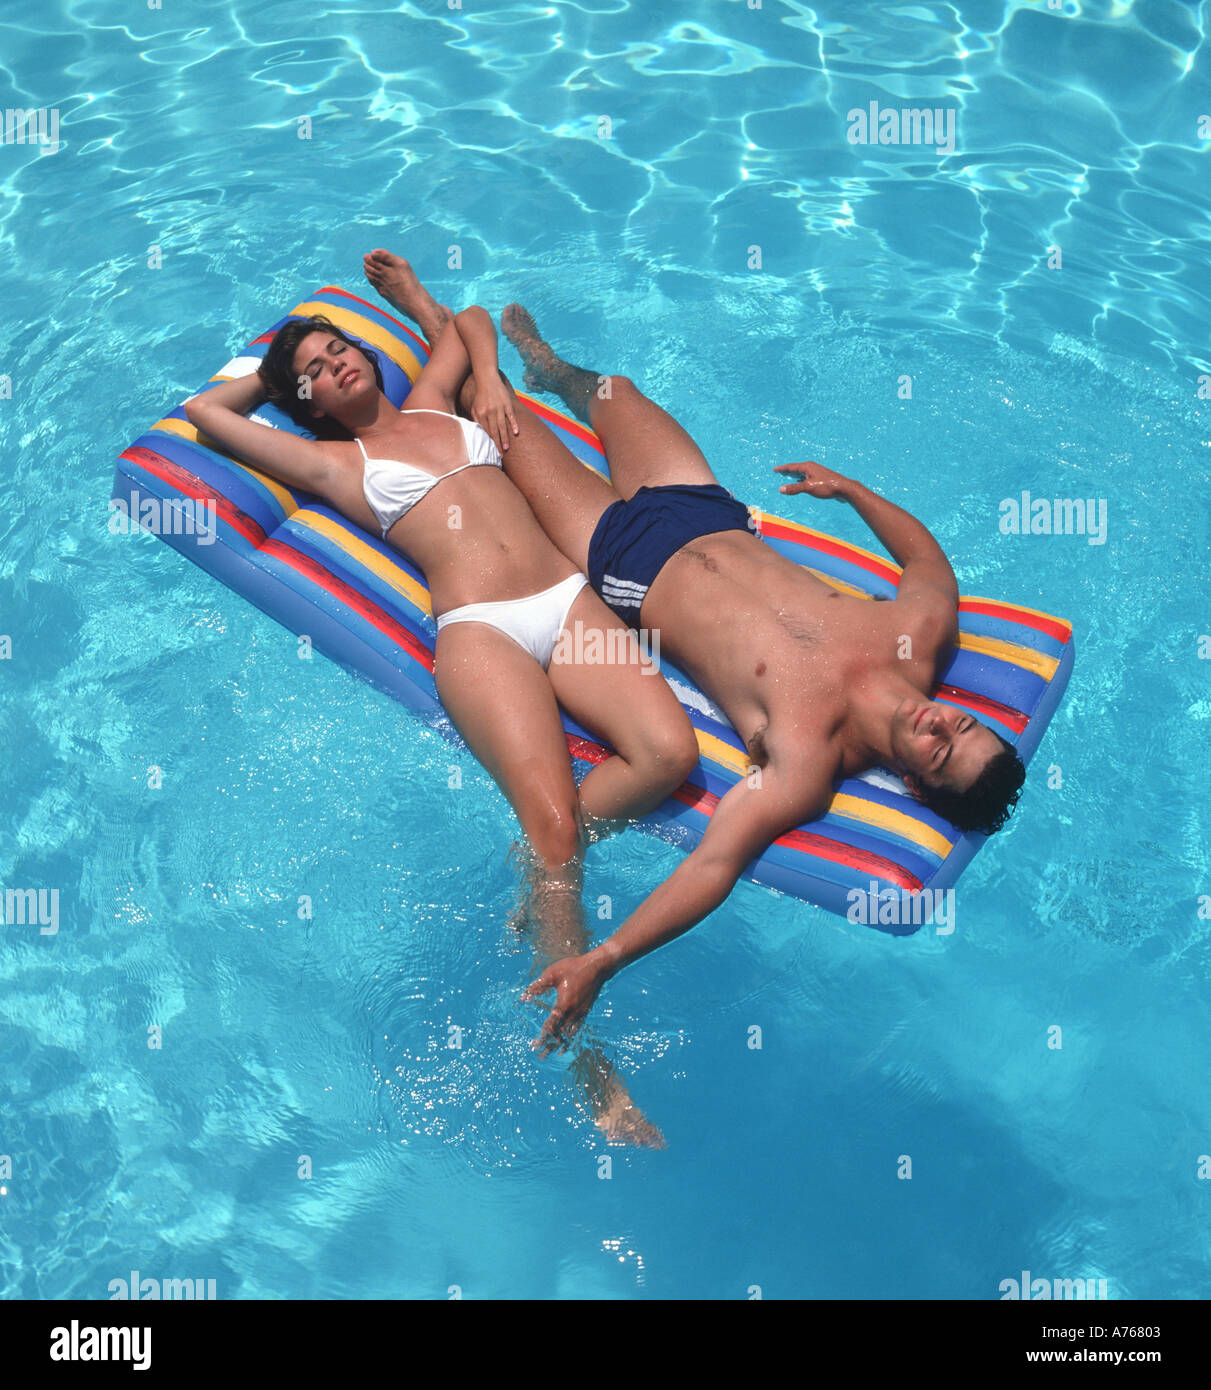 romantisch zu zweit teilen ein Floß in einem Schwimmbad Stockfotografie -  Alamy